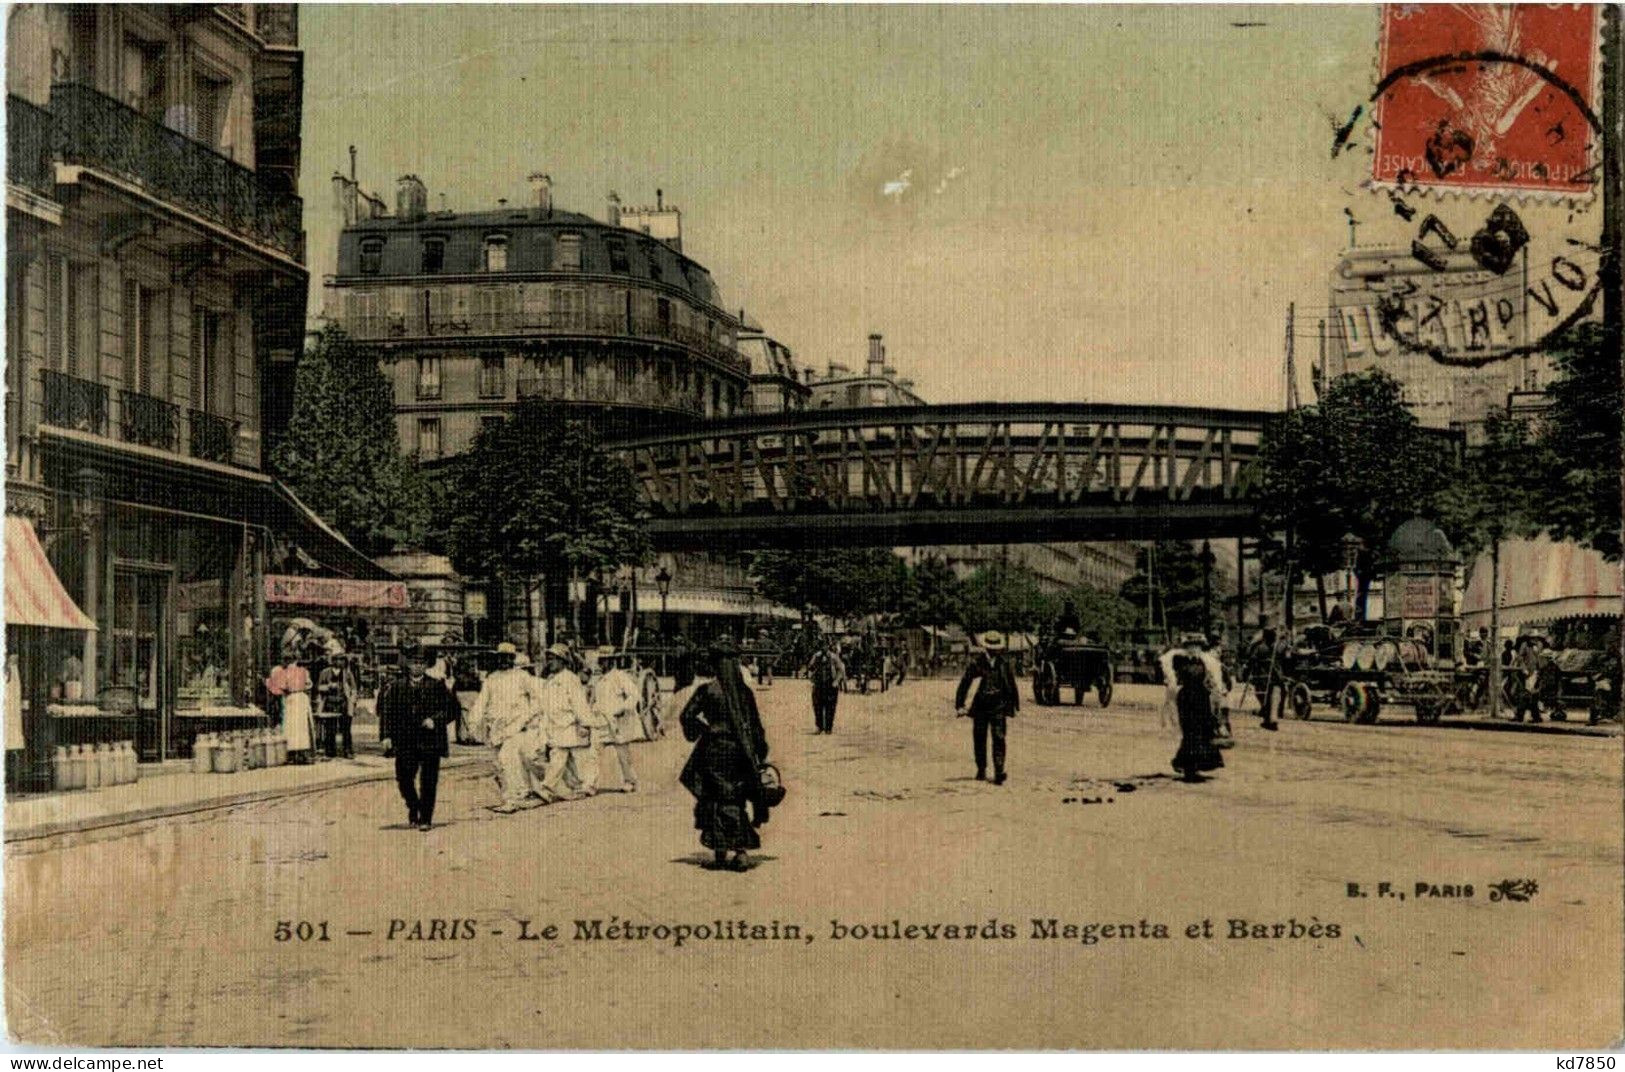 Paris - Metropolitain - Pariser Métro, Bahnhöfe